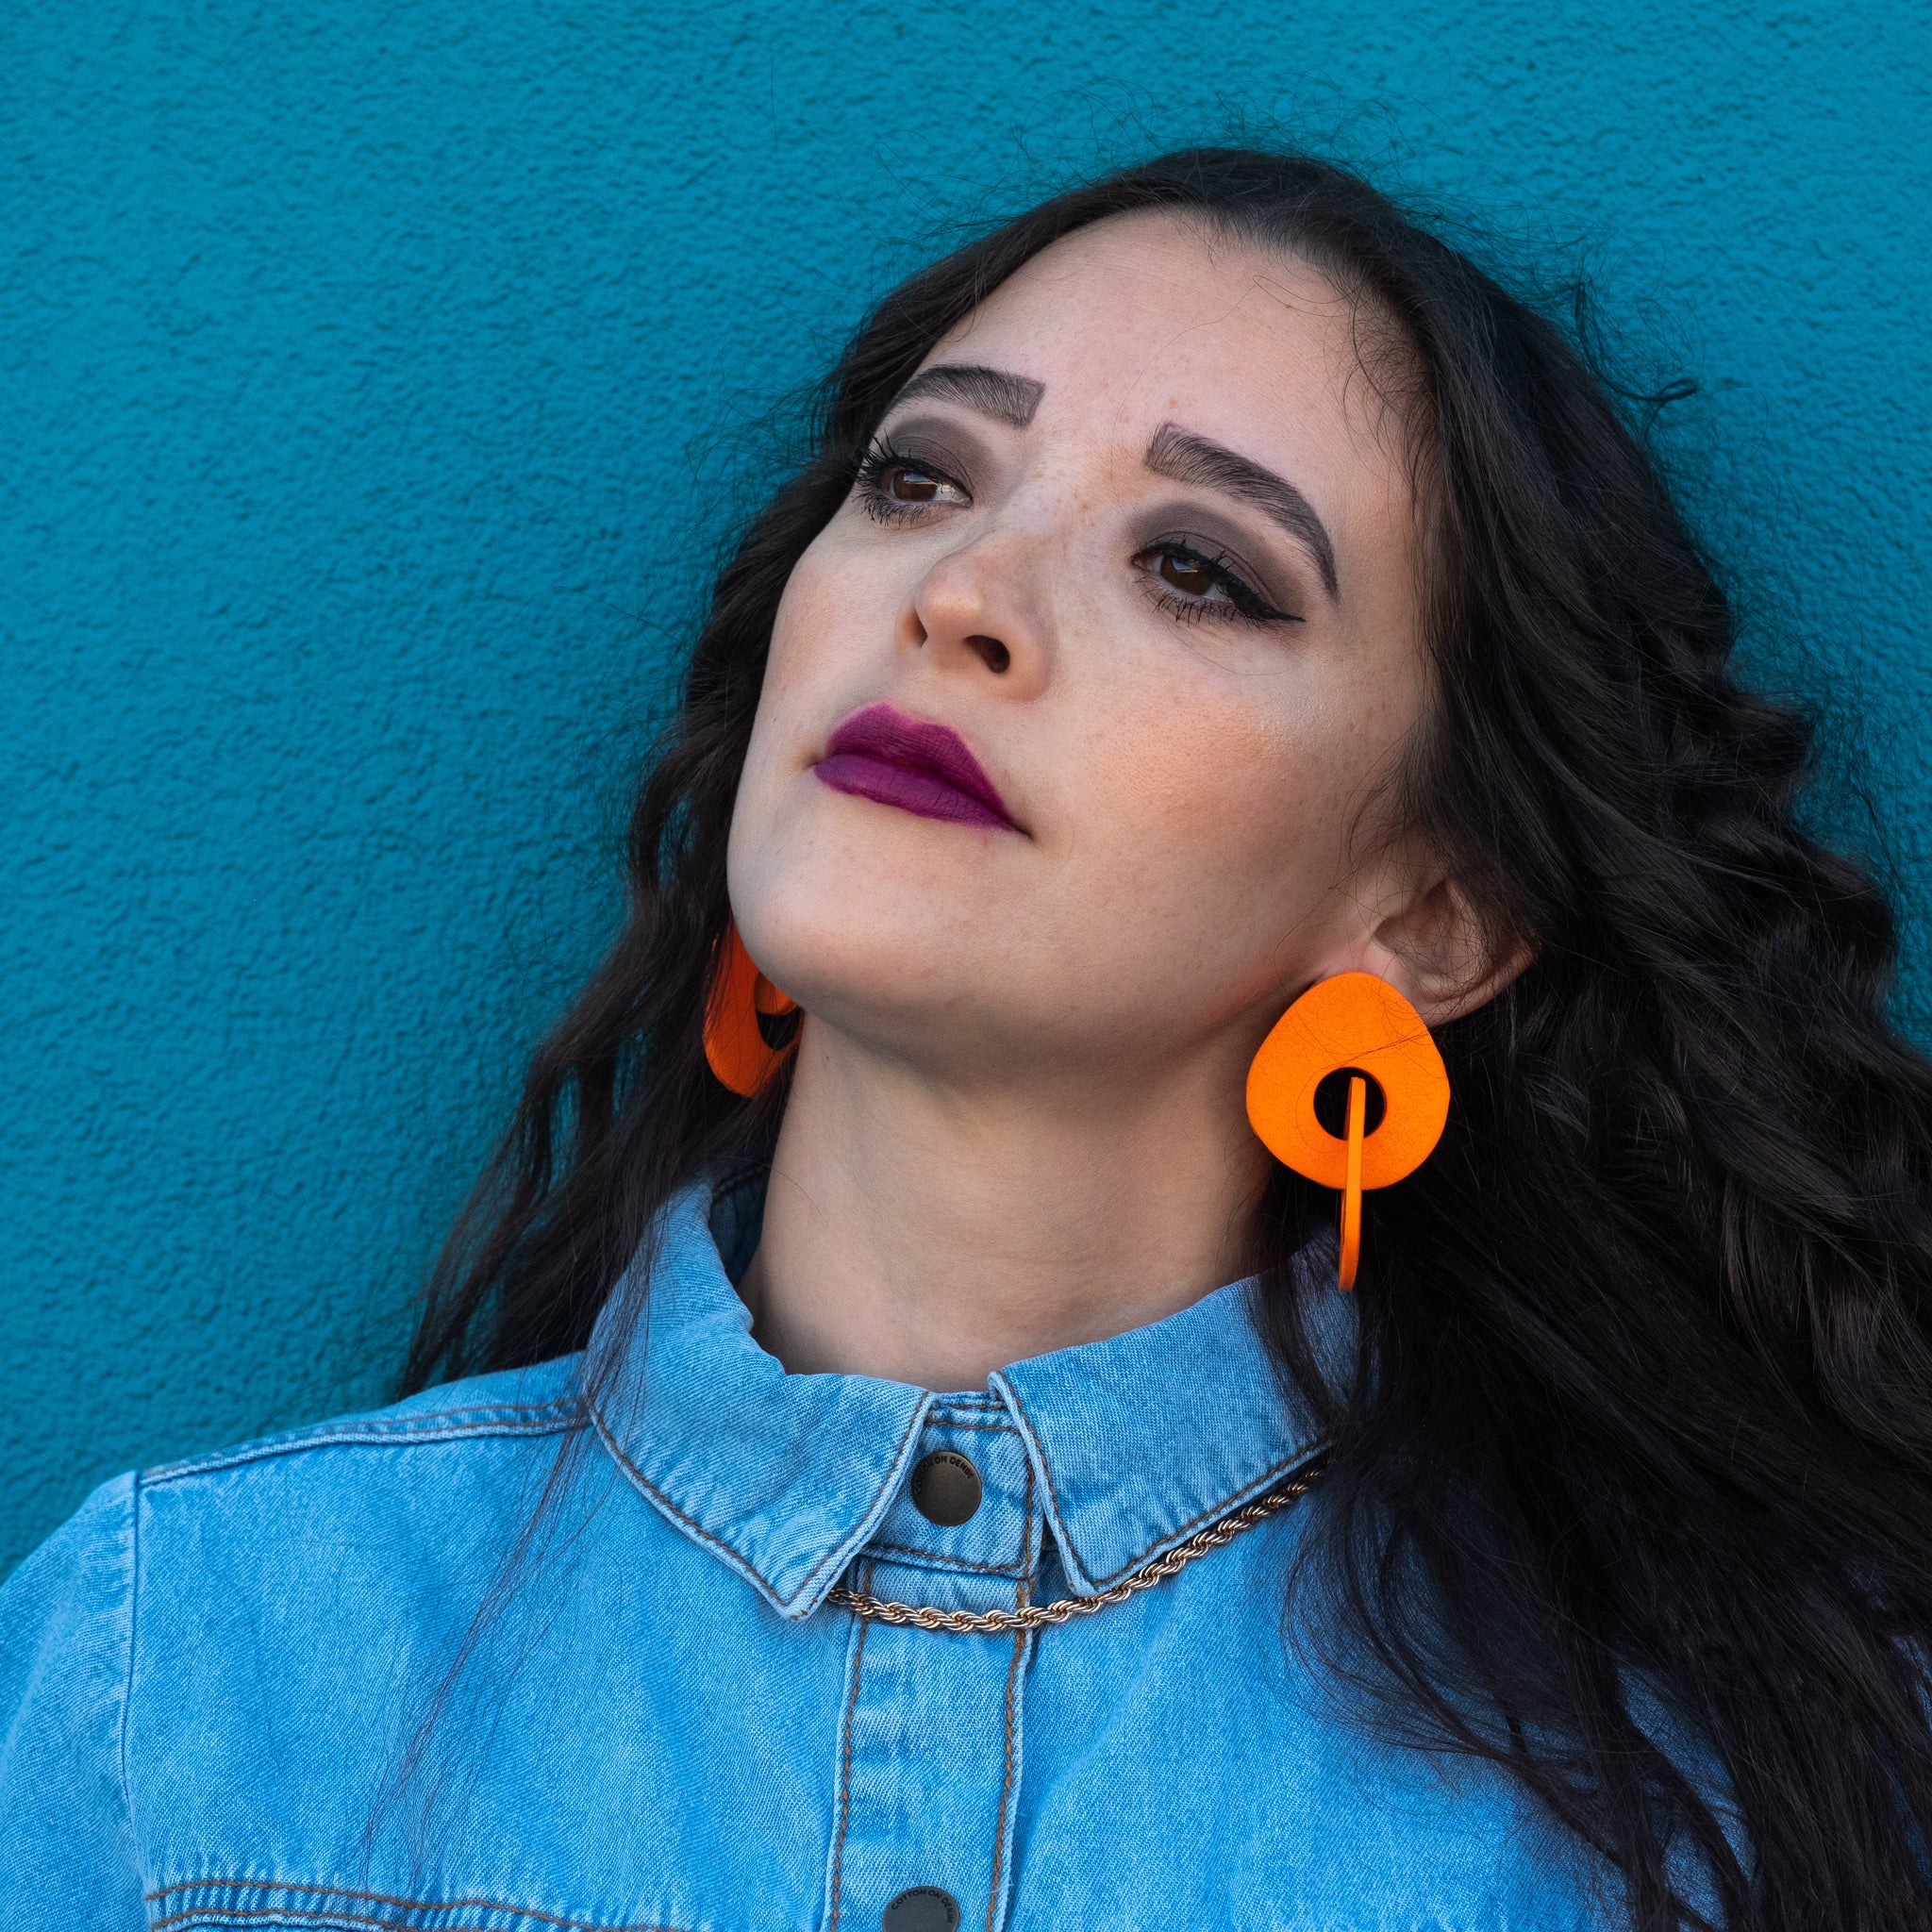 Stone Double Link Earrings - Orange Pop